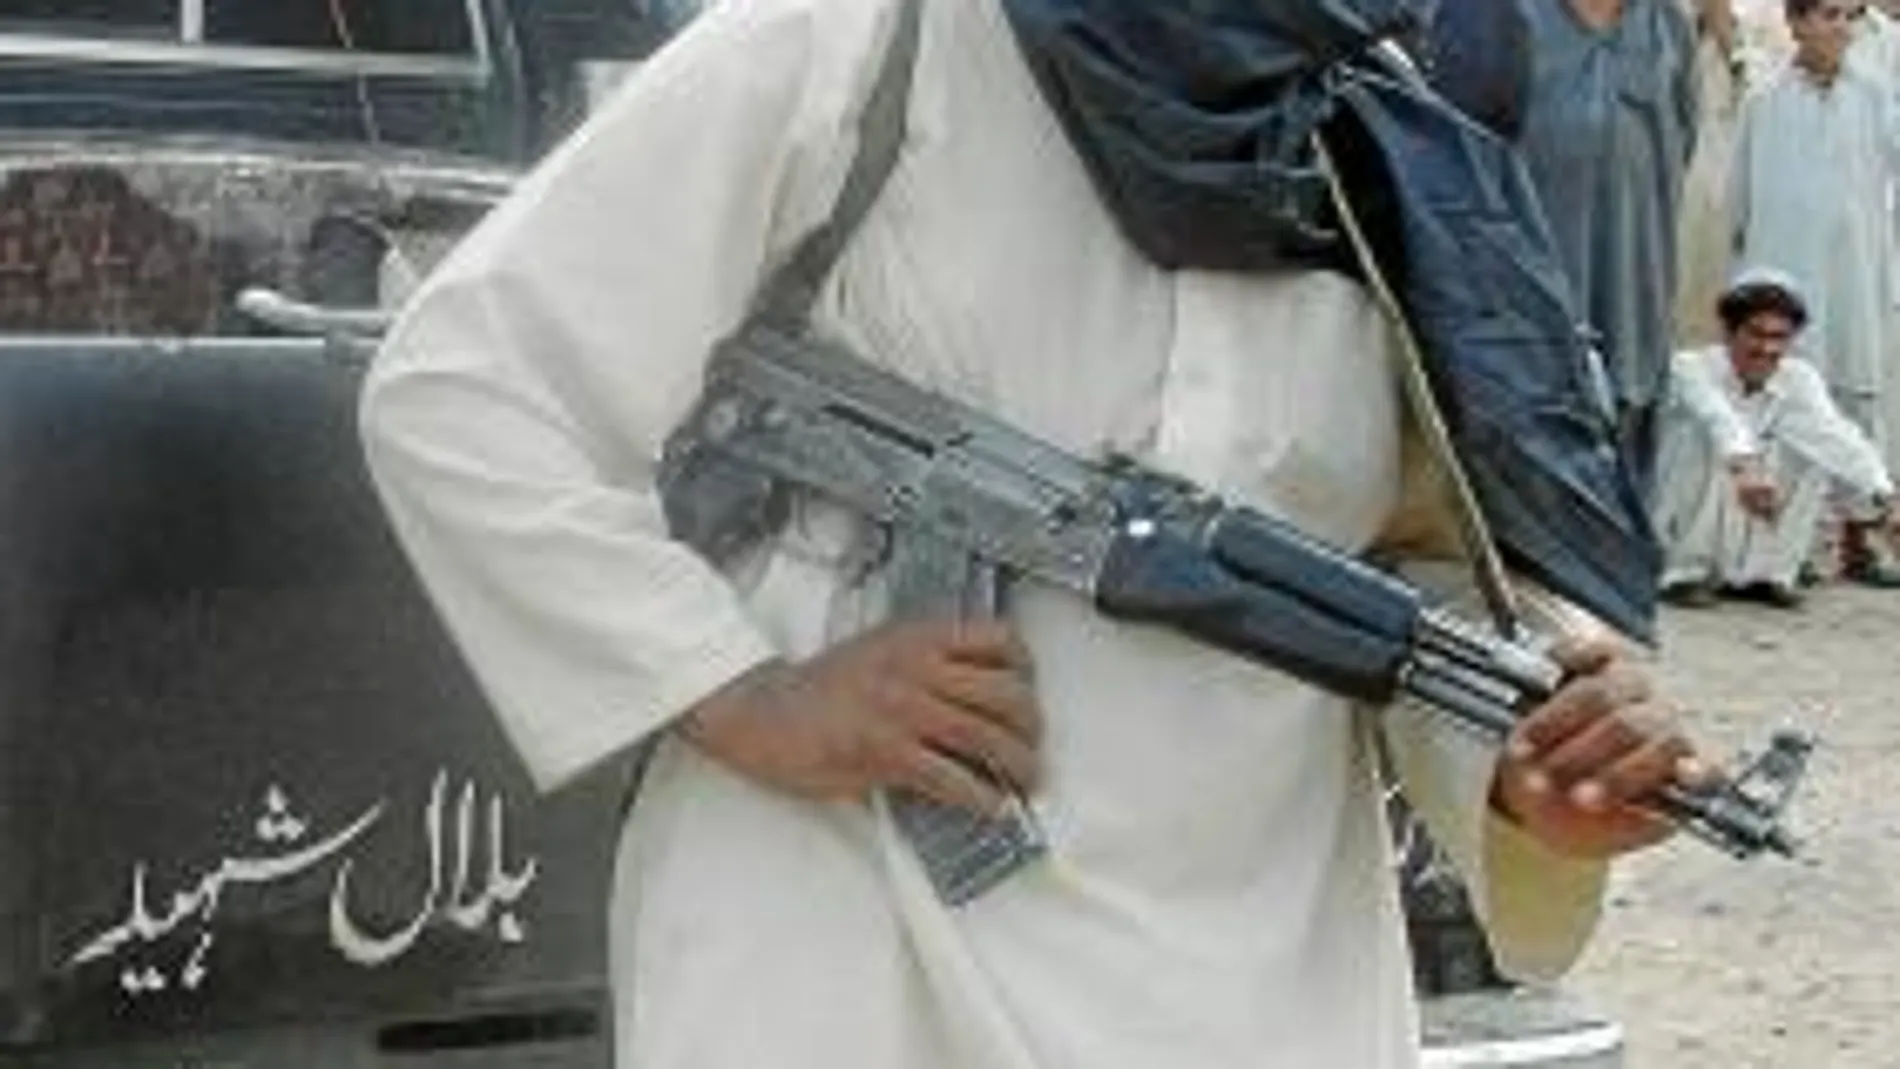 Los talibán utilizan la violencia como método para aterrorizar a la población civil y obtener su apoyo frente a las fuerzas aliadas